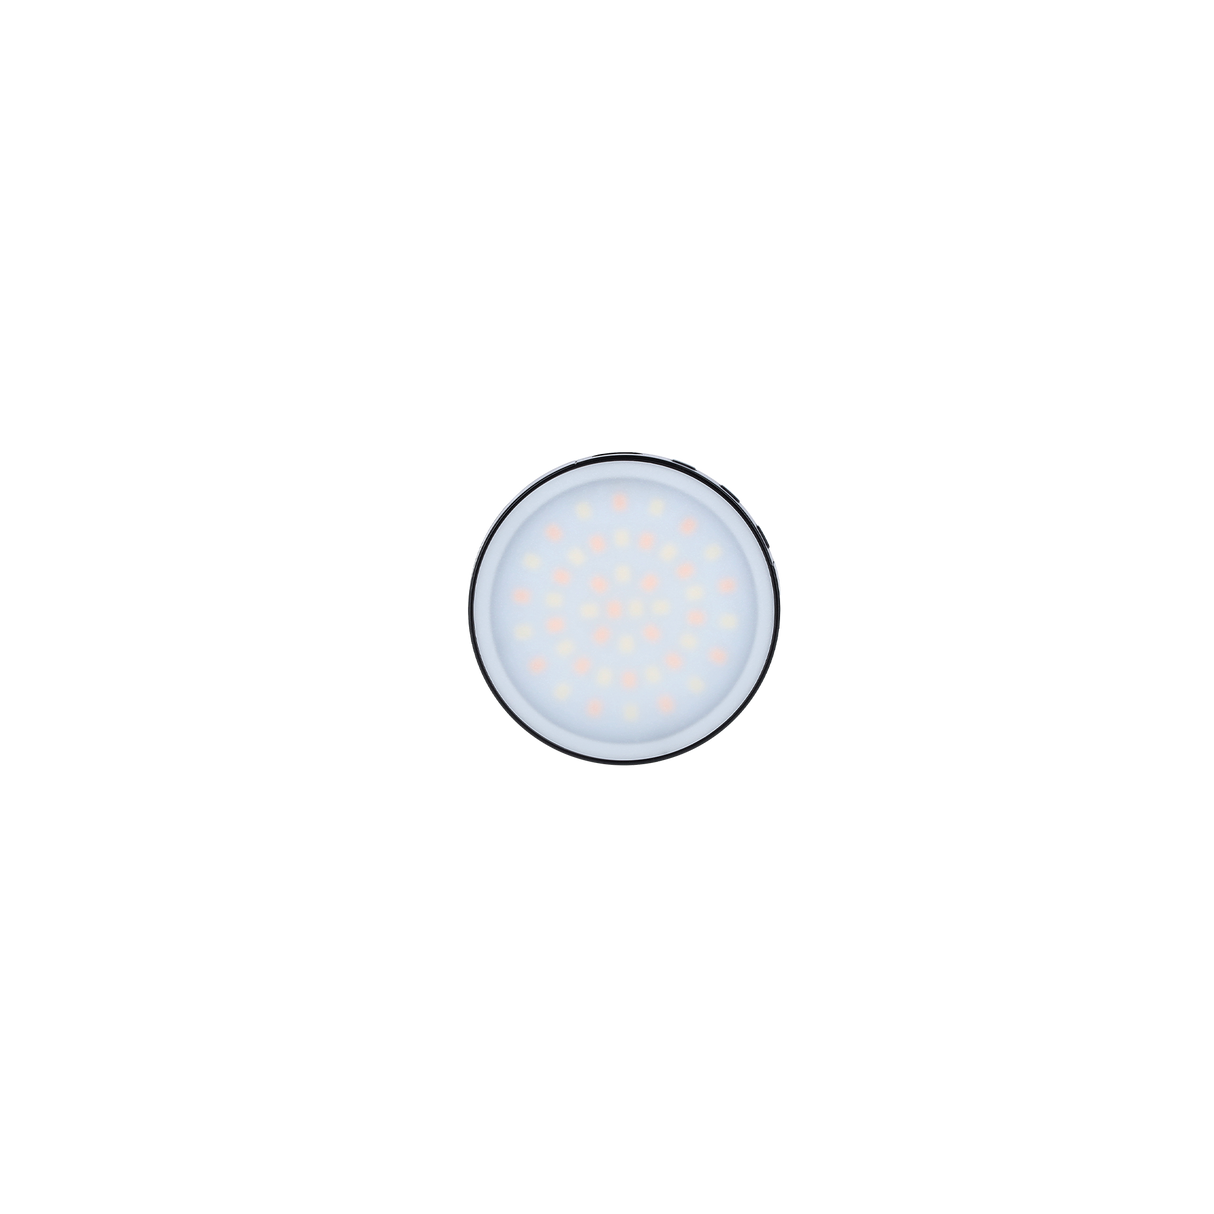 LUMIS Magnetic Smartphone Light Bi-Color - Round